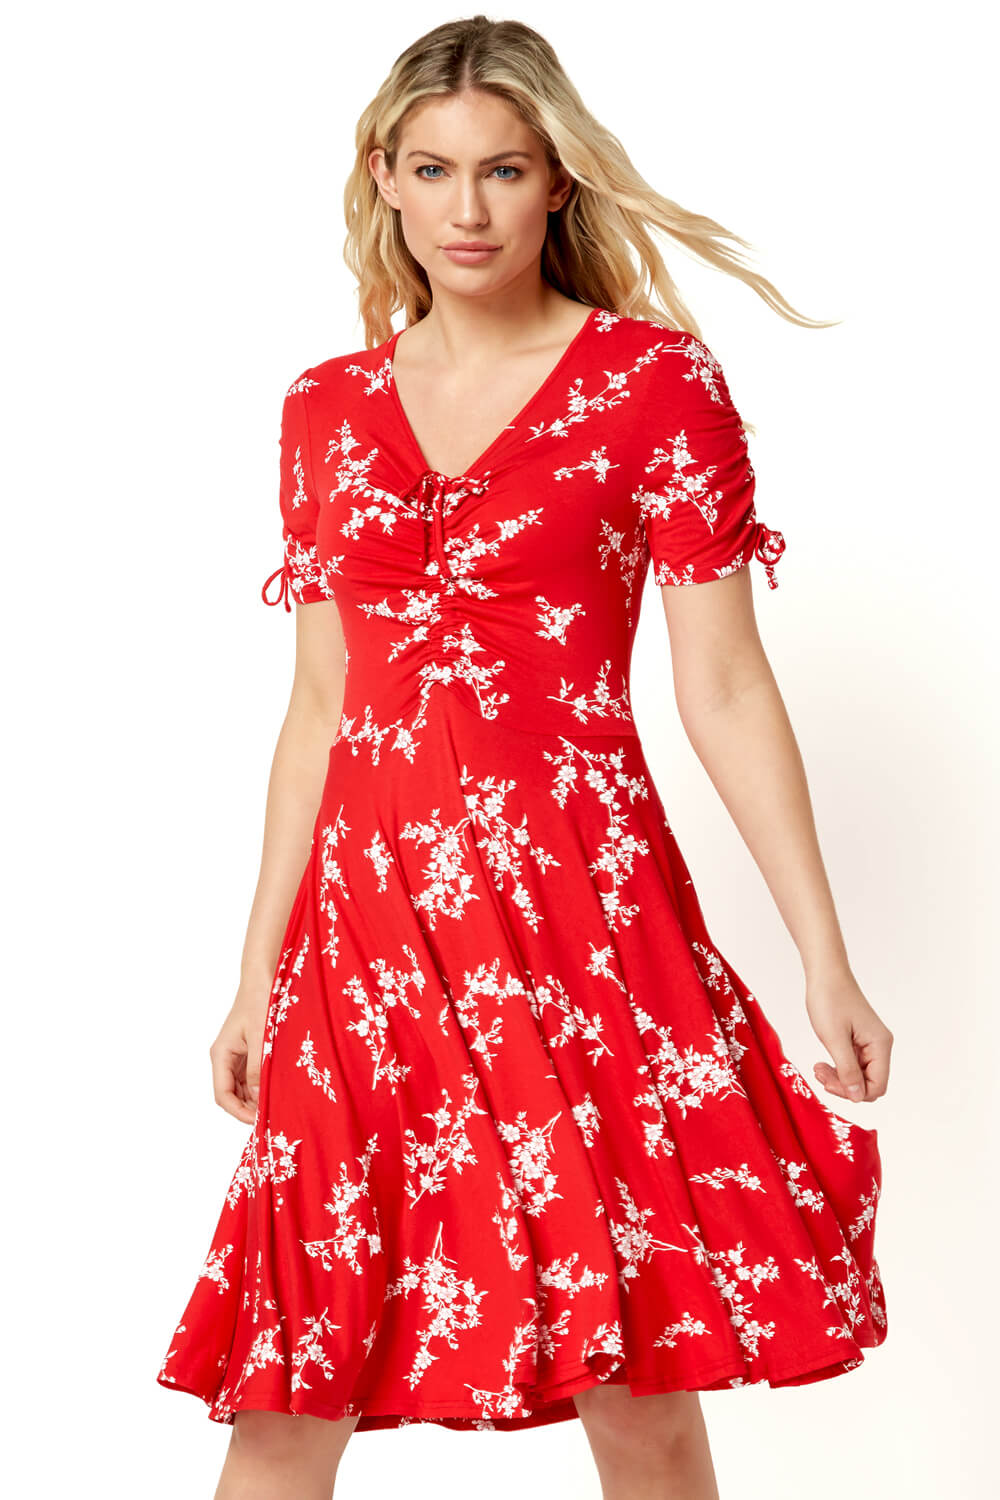 Red Floral V-Neck Short Sleeve Dress, Image 2 of 5